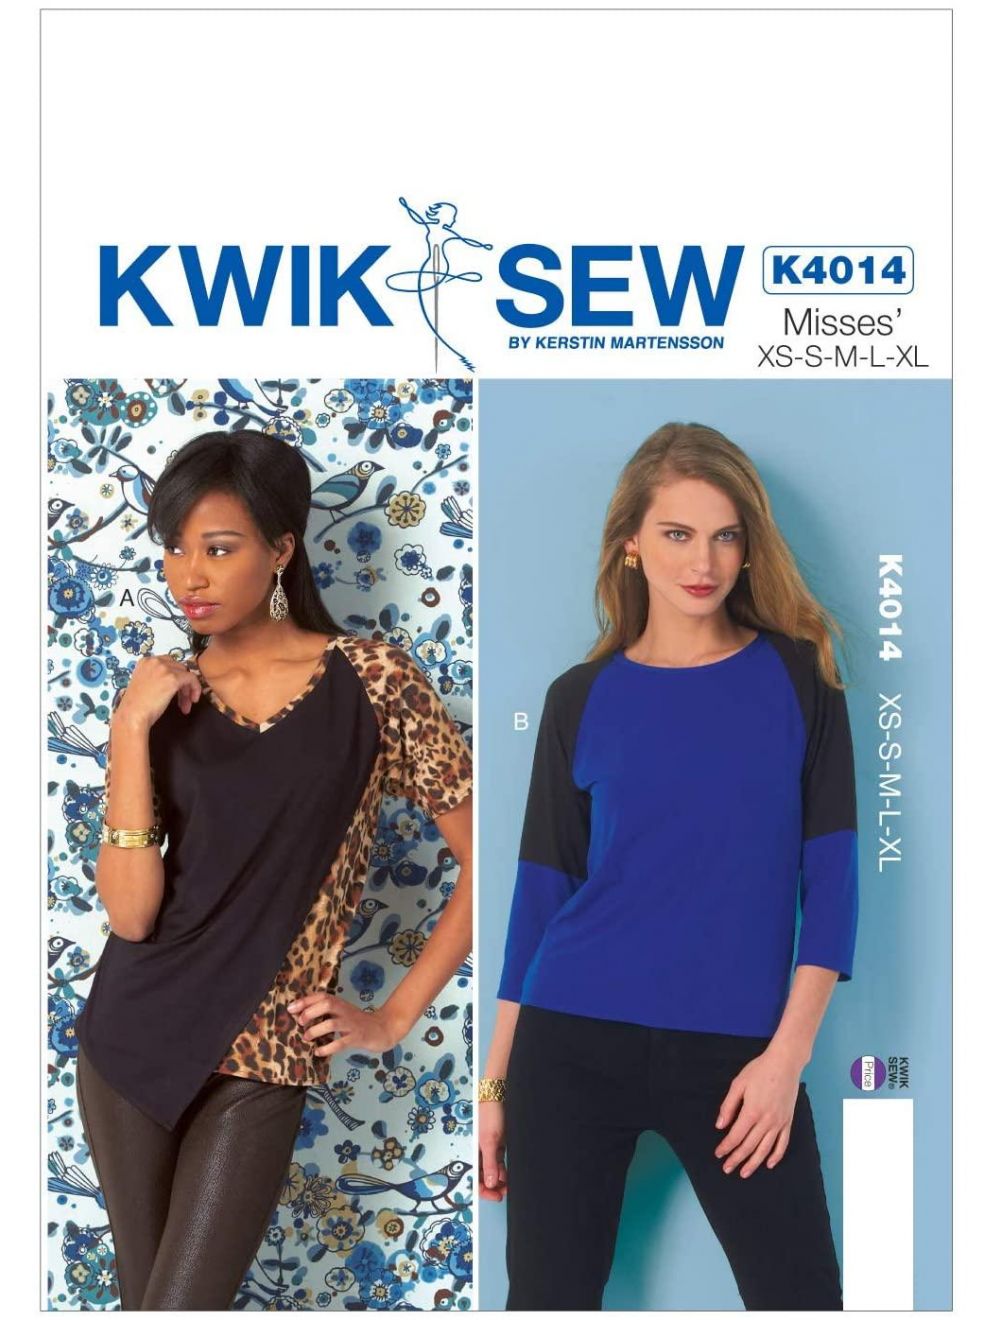 Kwik Sew Pattern Top and Pants, (XS, S, M, L, XL)